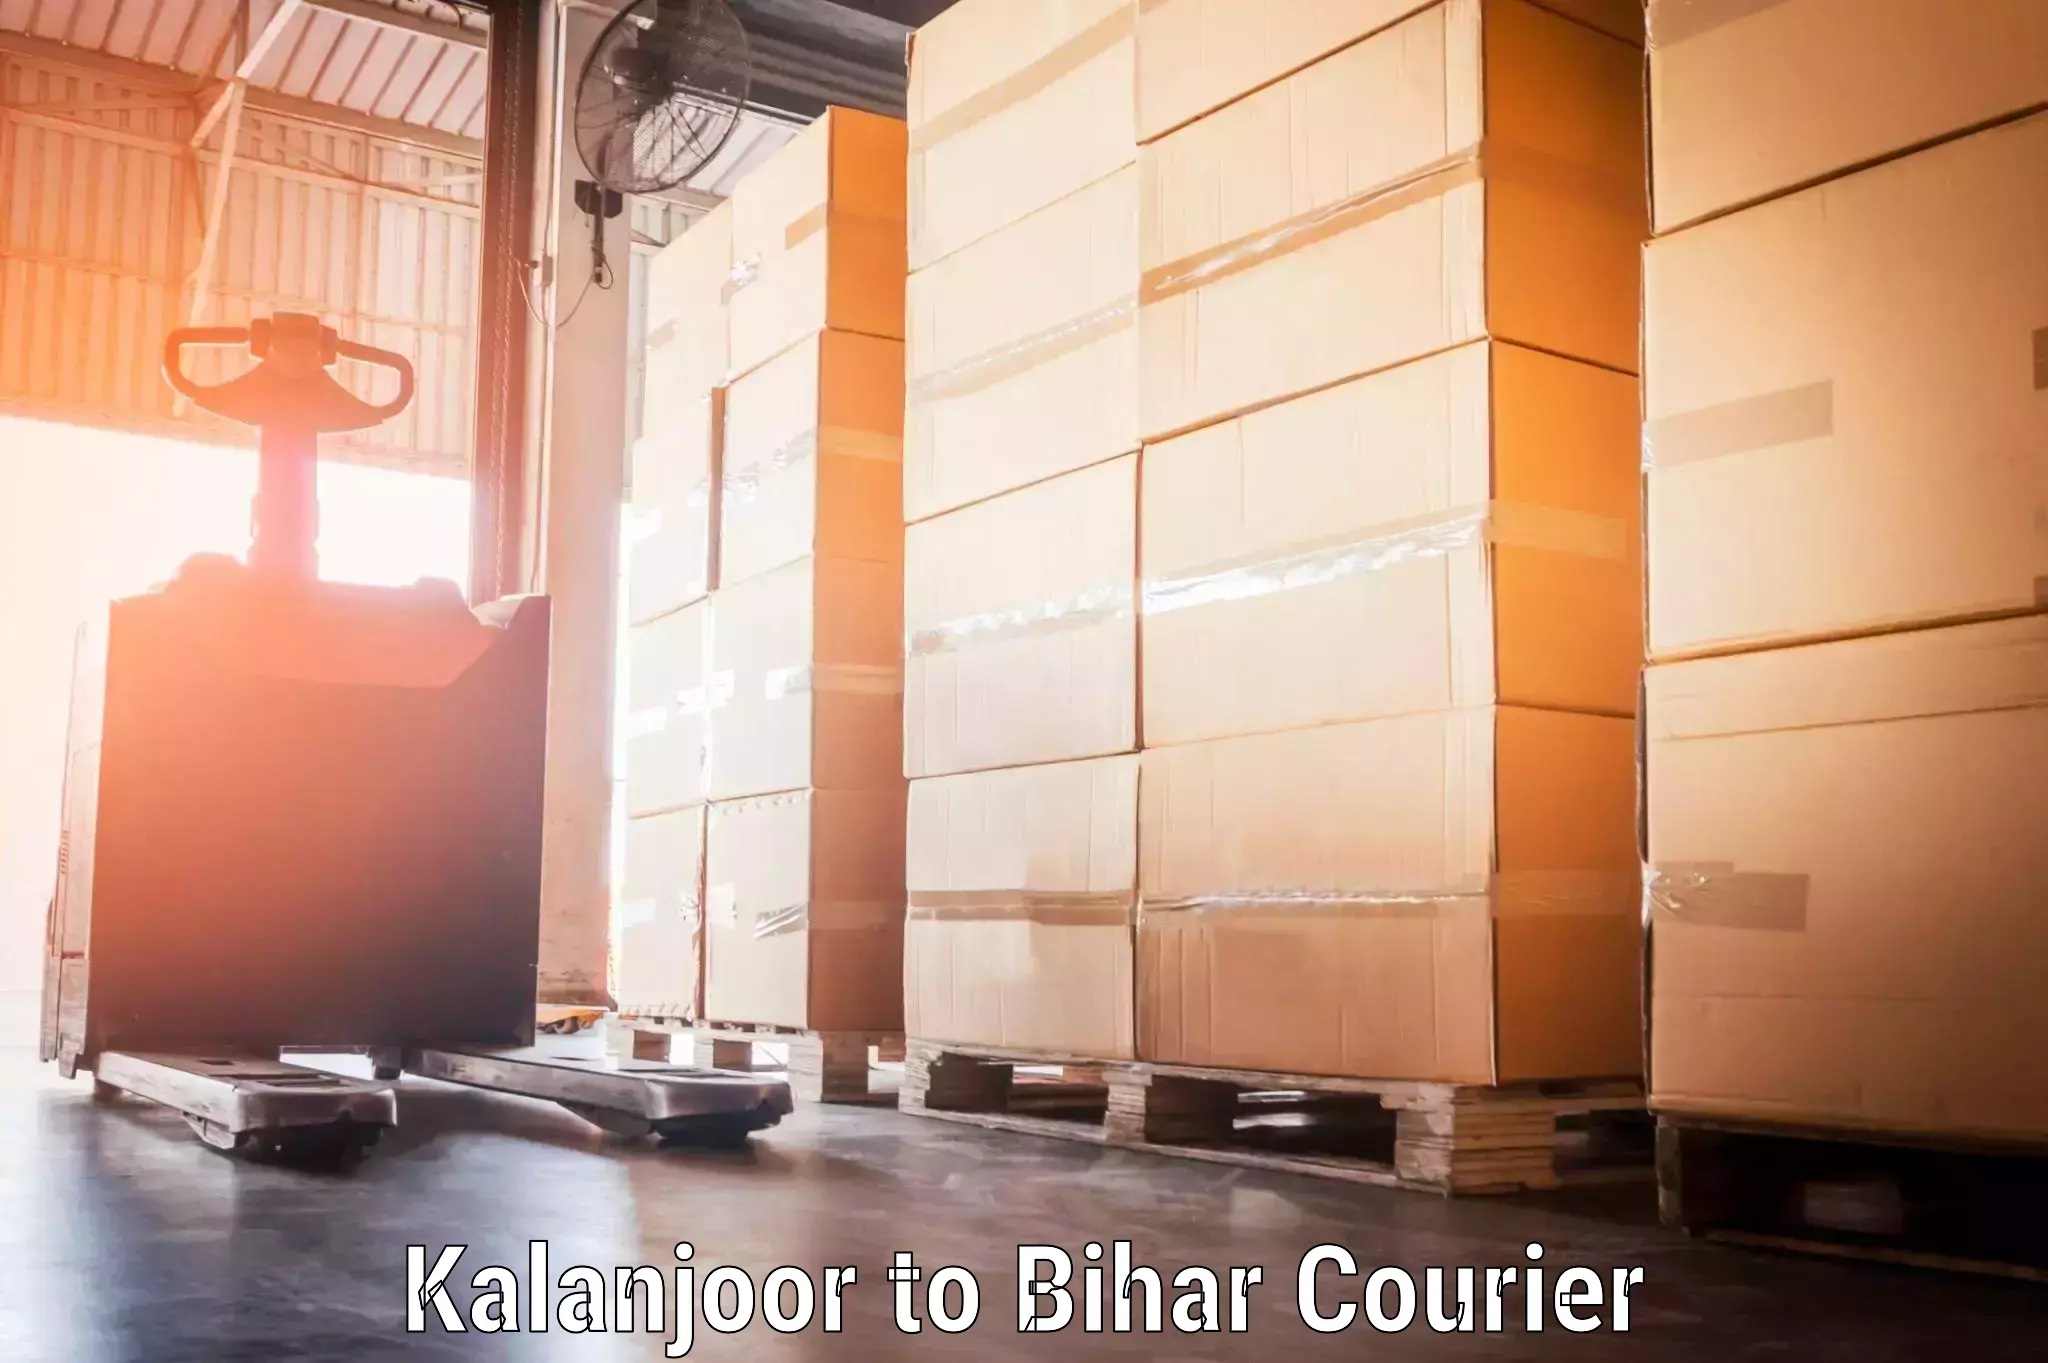 Budget-friendly baggage courier Kalanjoor to Bikramganj